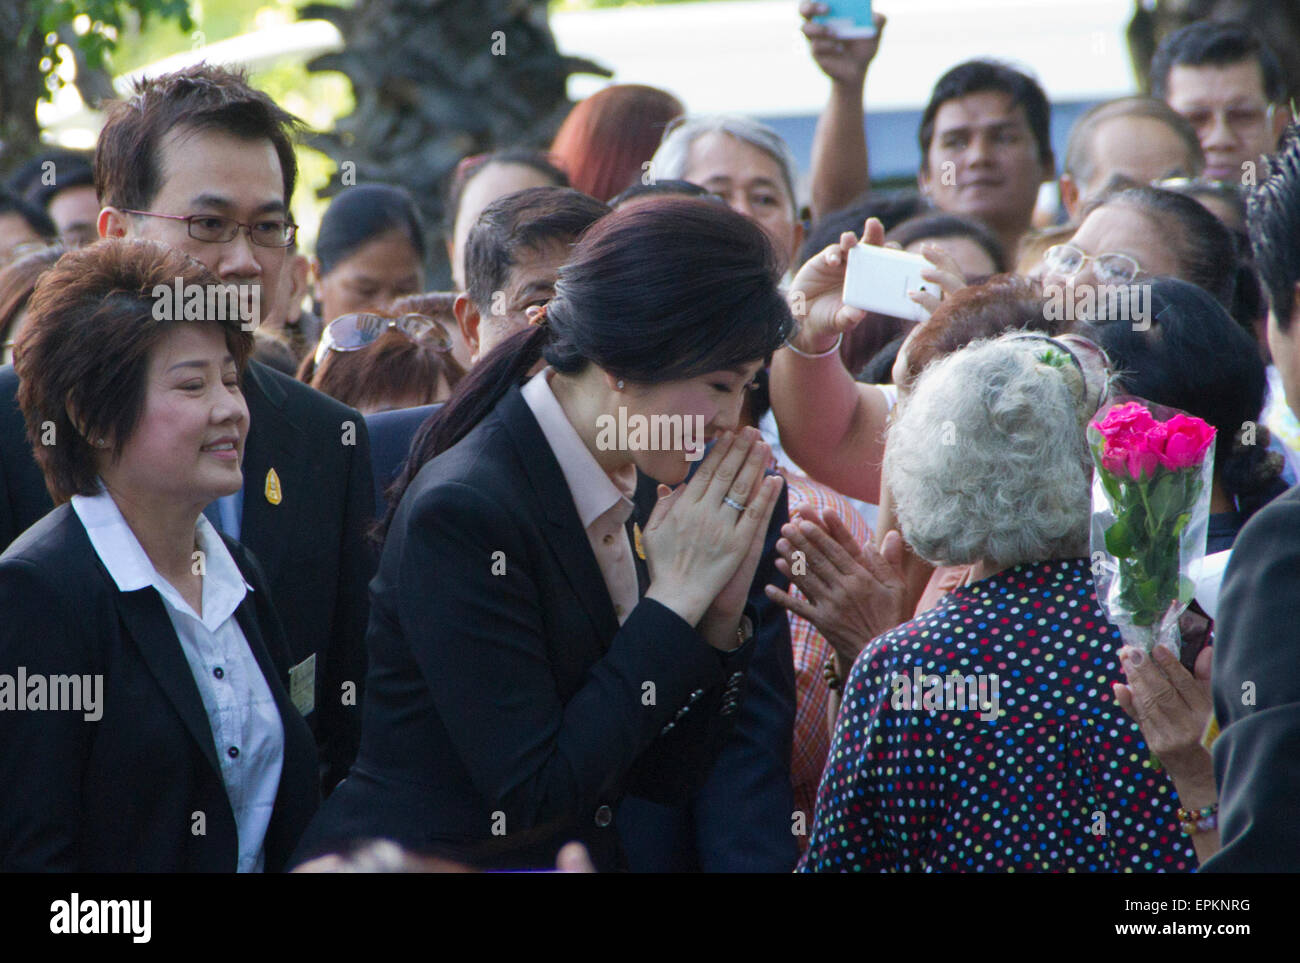 Bangkok, Thailand. 19. Mai 2015. Ehemaliger Premierminister Yingluck Shinawatra kam beim Obersten Gerichtshof am Dienstagmorgen um Öffnung Vernehmung der Pflichtverletzung-of-Duty-Fall bezüglich ihrer Regierung Reis Verpfändung.   Am Montag sagte Surasak Trirattrakul, Anfrage Direktor des Büros des Generalstaatsanwalts, Strafkammer des Obersten Gerichtshofs für Inhaber von politischen Positionen bestellt Frau Yingluck am 09:30 angezeigt werden, die Gebühren zu hören und geben ihr Plädoyer. Sie war voraussichtlich nicht vor Gericht schuldig. Bildnachweis: PixelPro/Alamy Live-Nachrichten Stockfoto